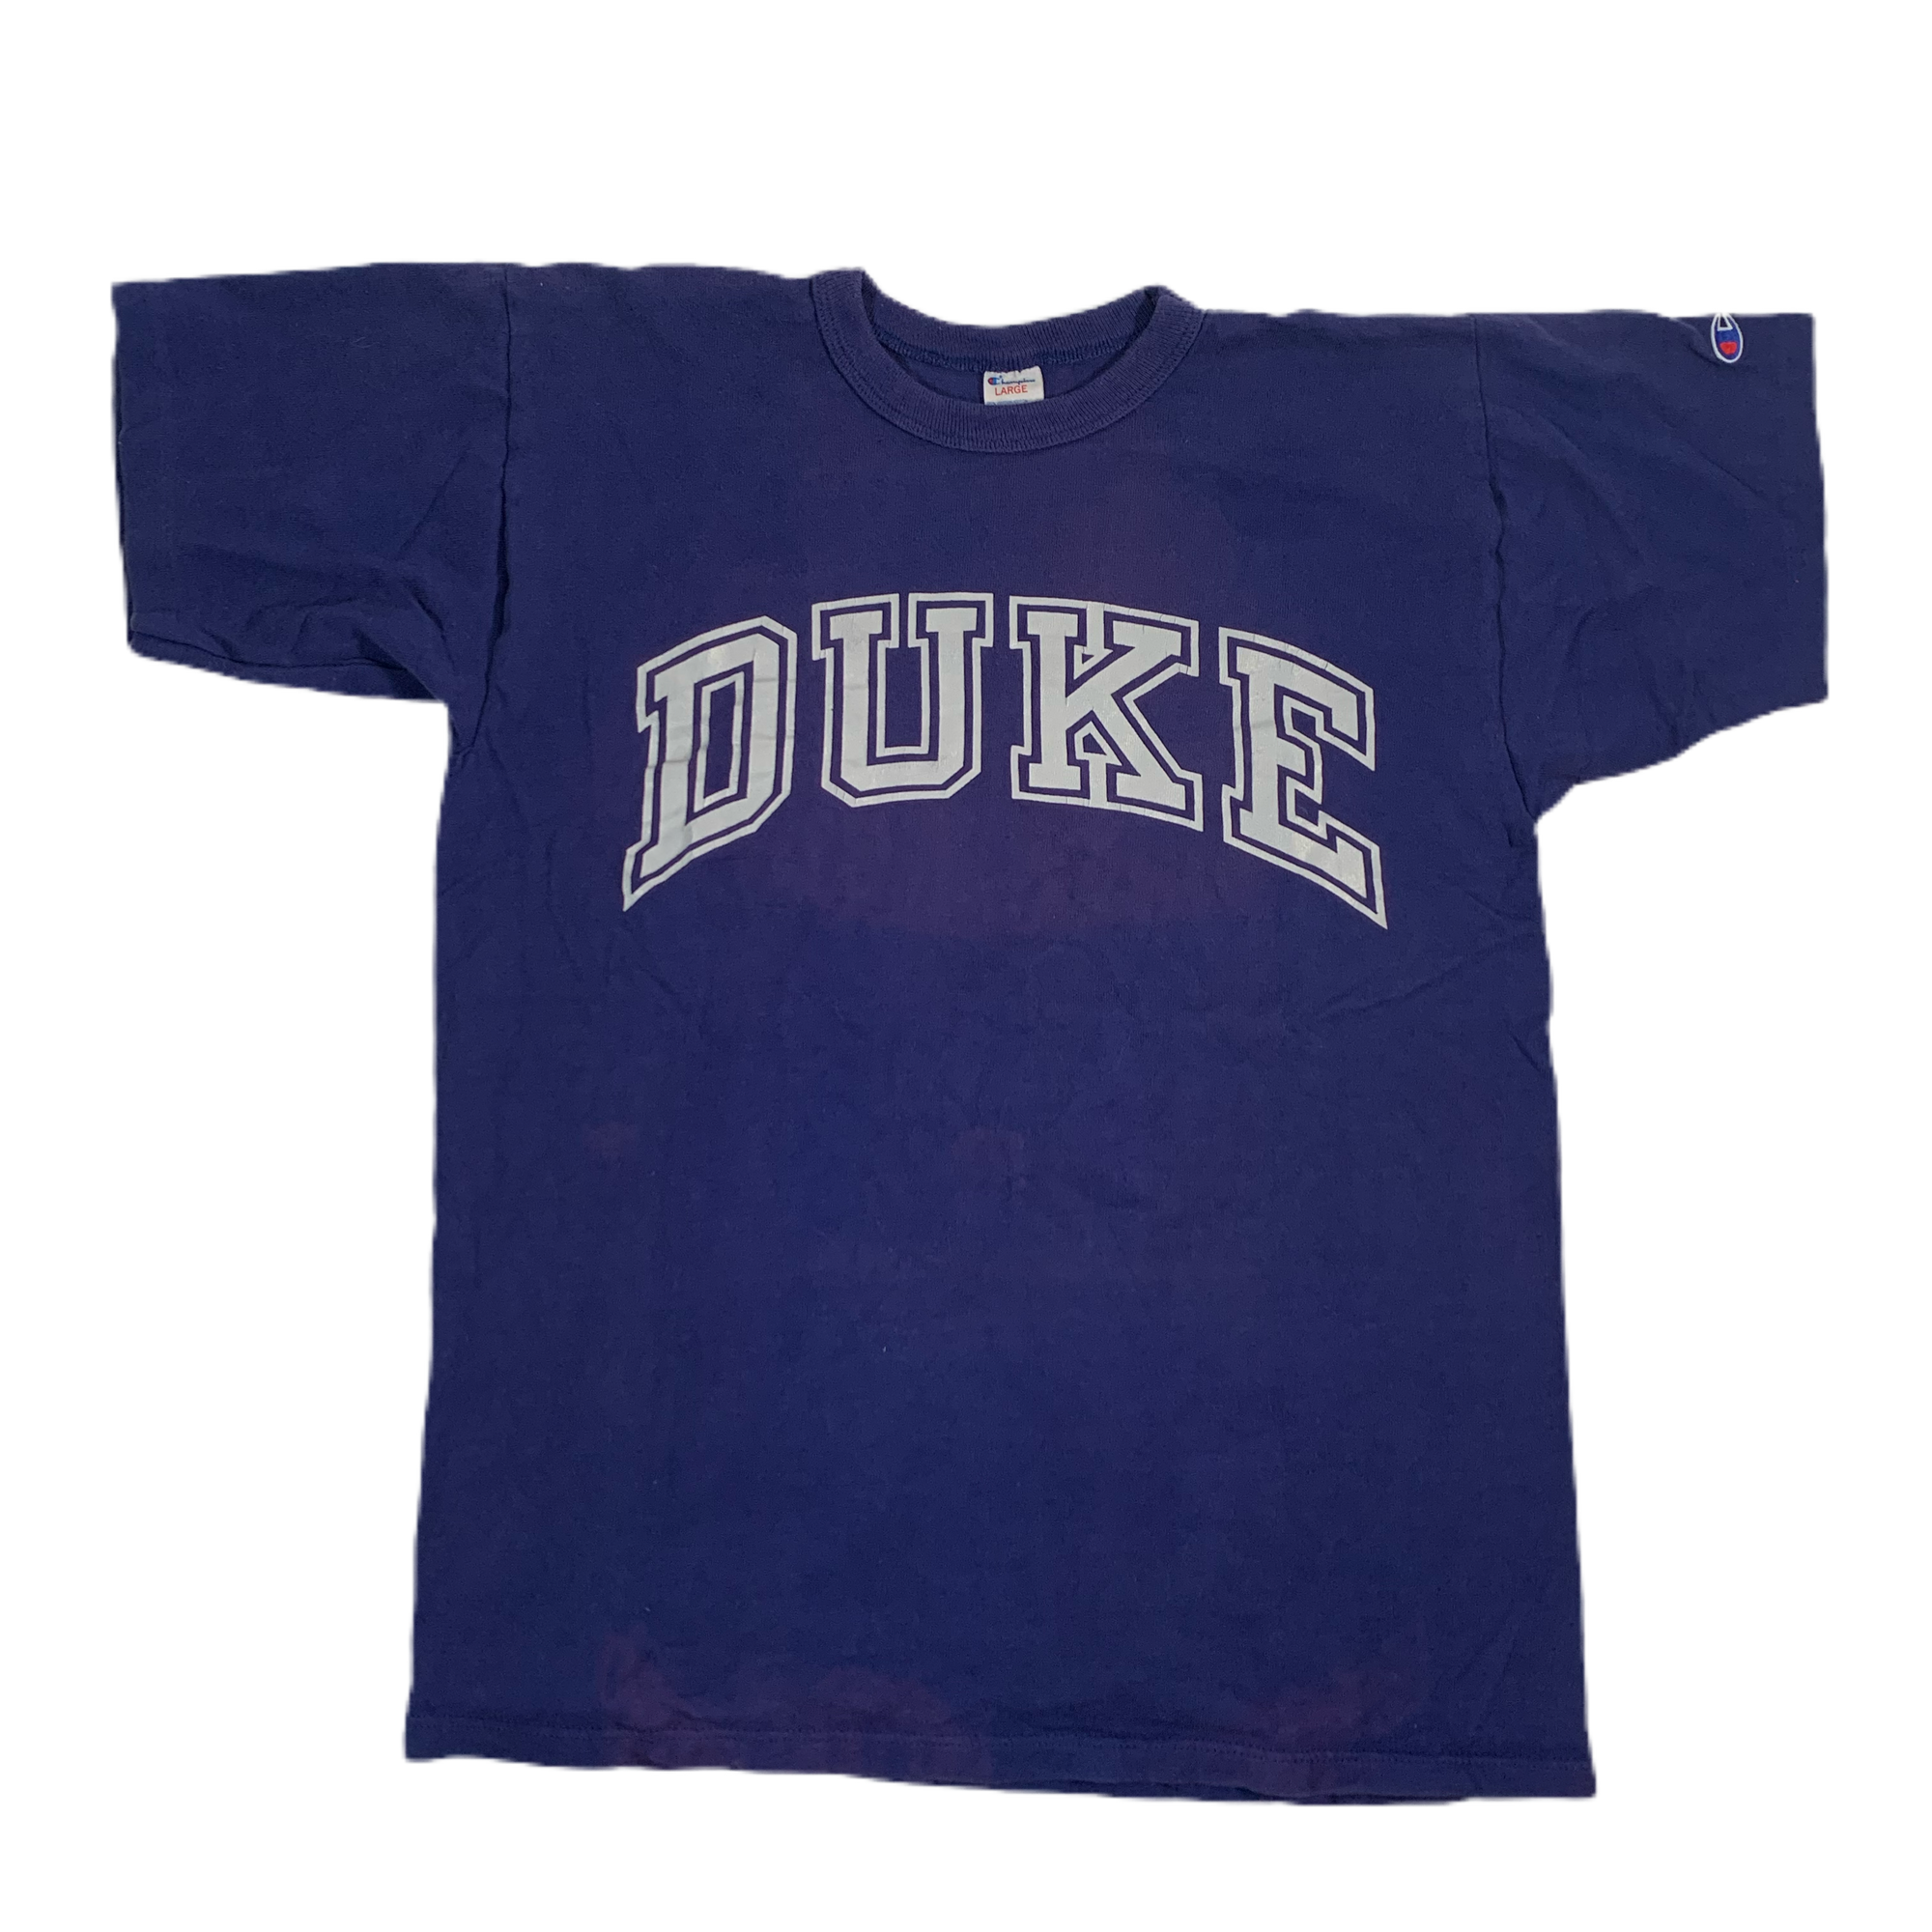 Vintage Champion Duke "Blue Devils" T-Shirt - jointcustodydc